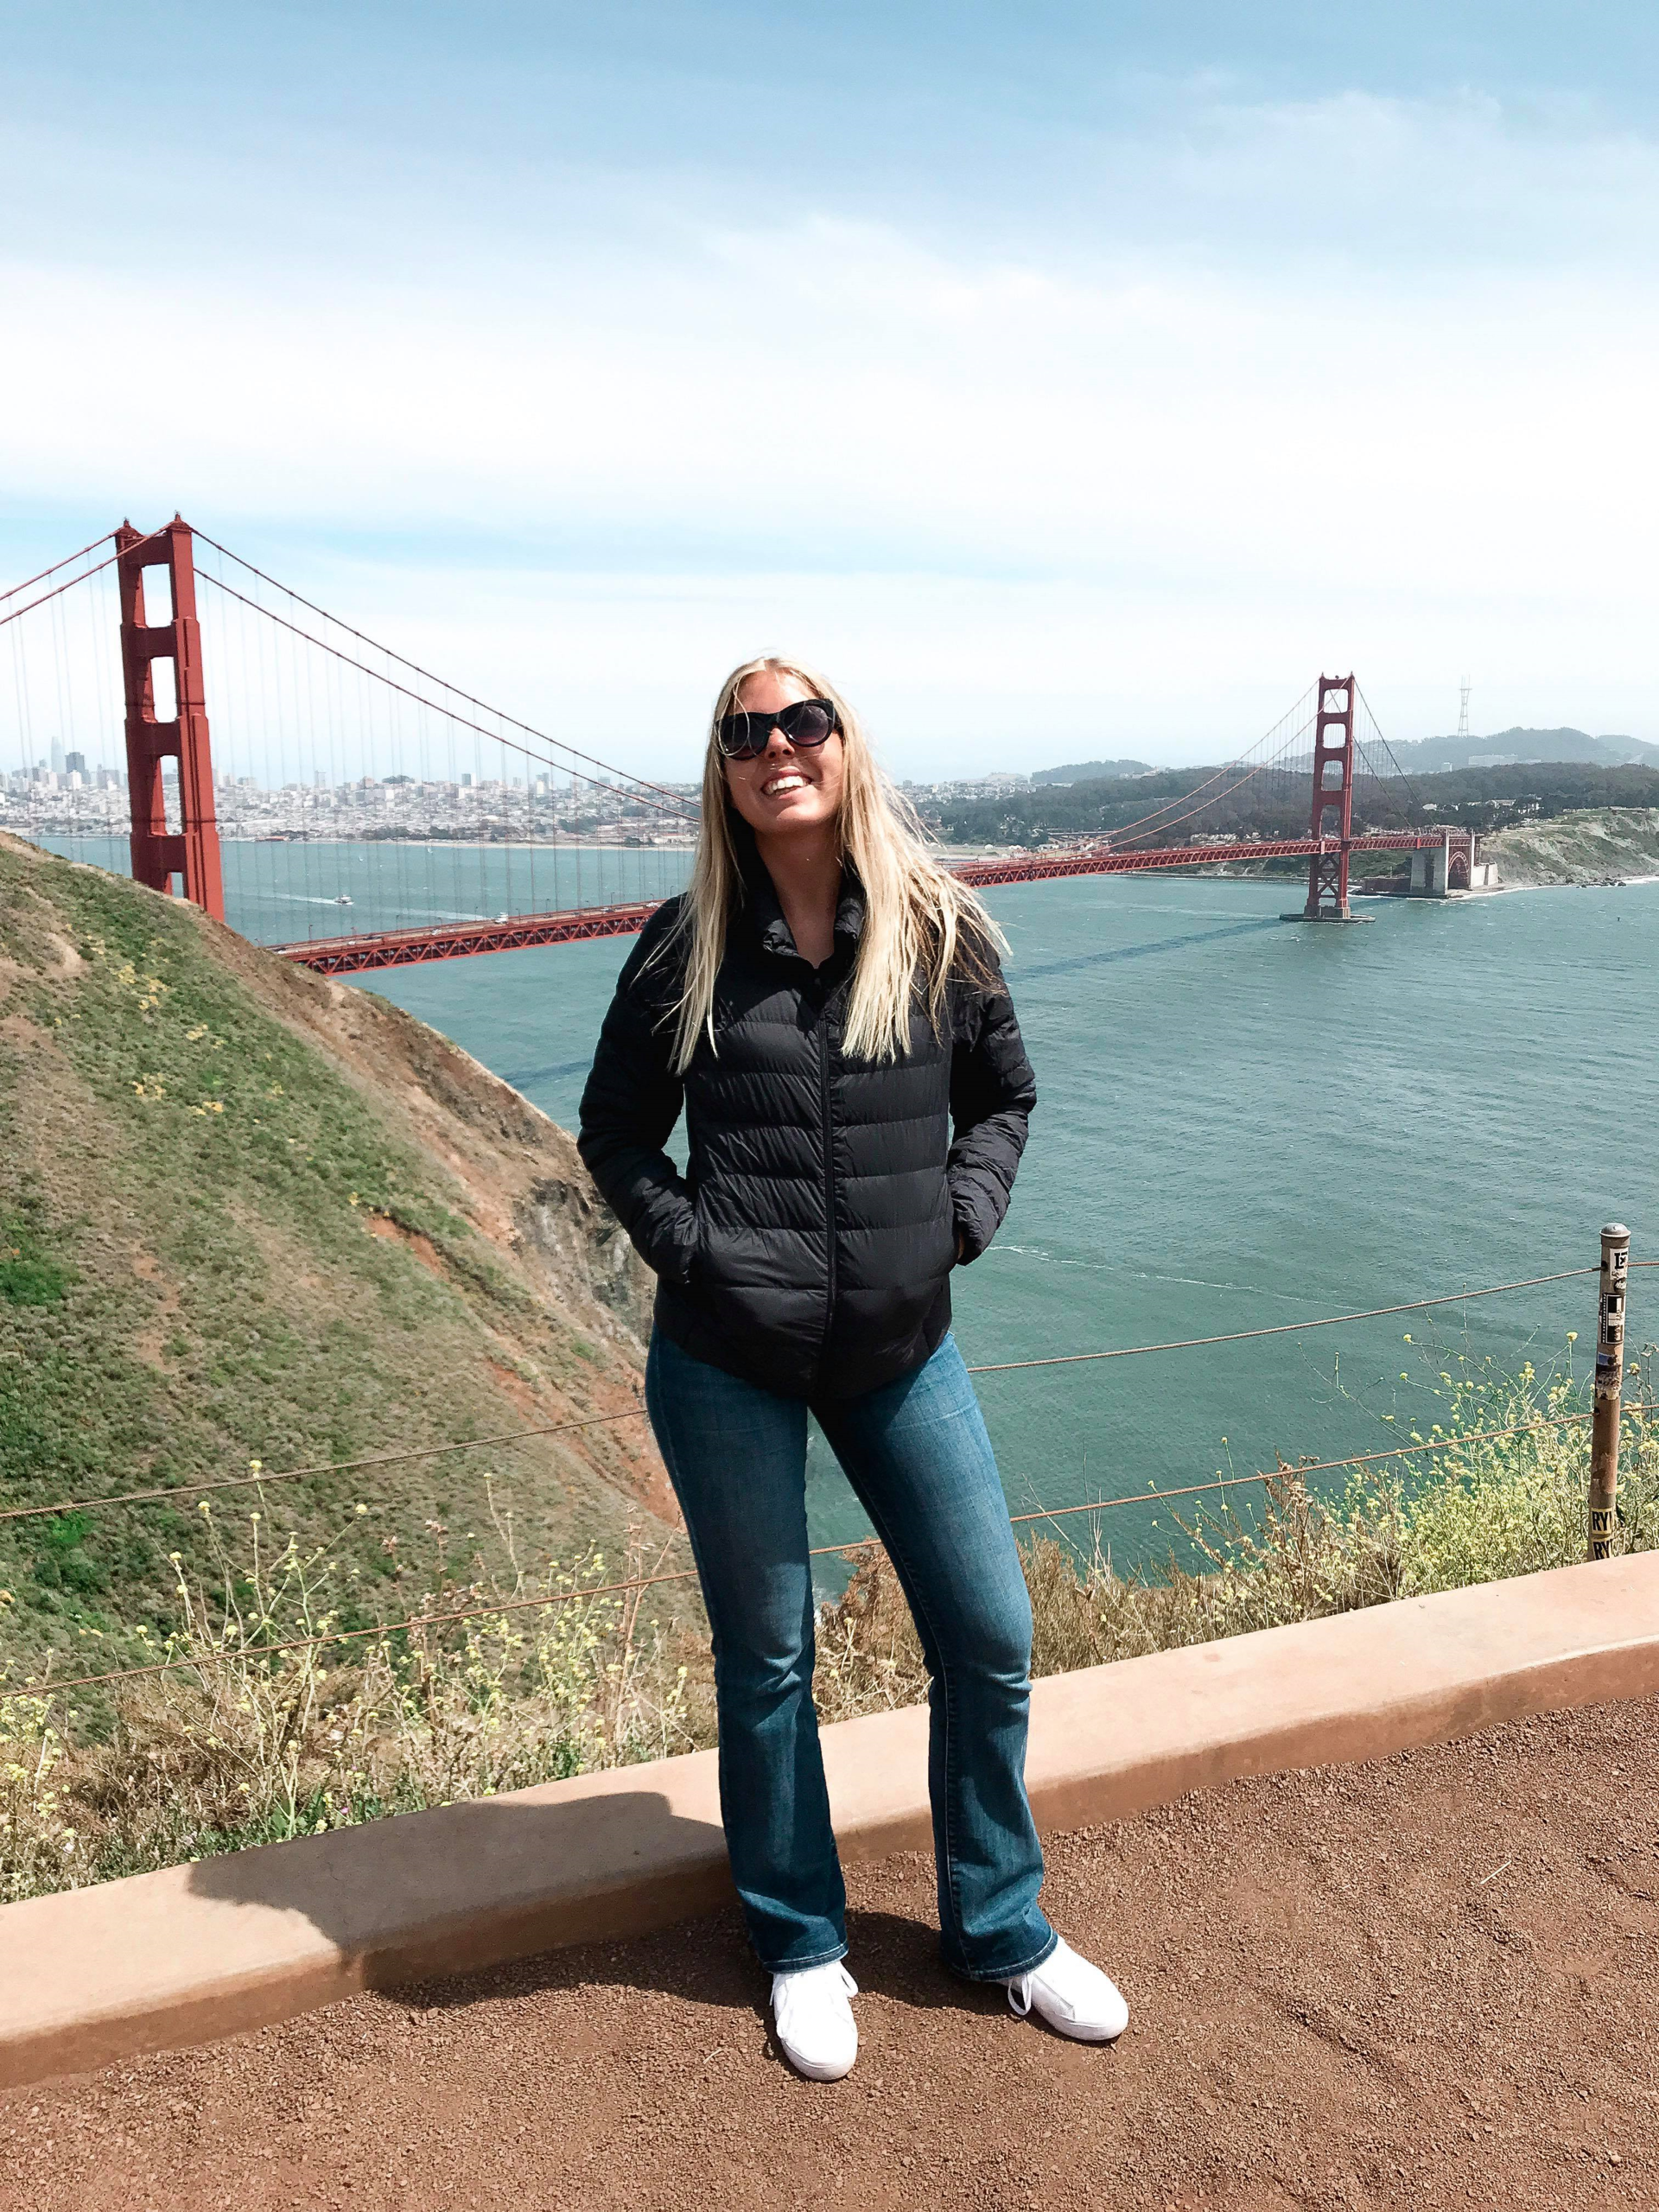 Utsikt over Golden Gate Bridge og San Francisco i bakgrunnen (Foto: Anette  Øvrelid  Myhre, 2018).   